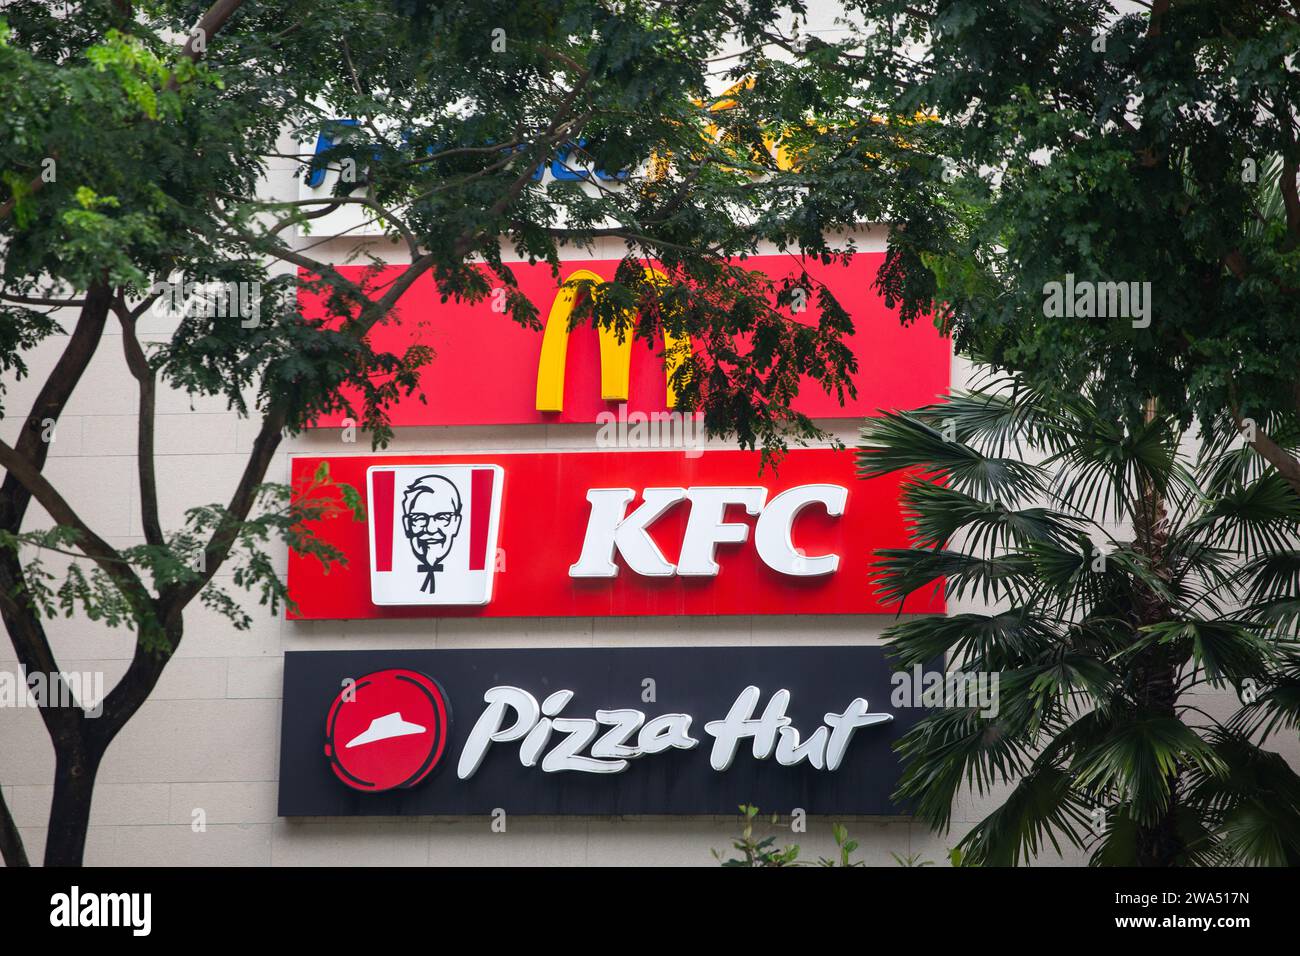 Ein seltener Blick auf die Schilder großer Marken für Speisen und Getränke in einer Reihe, besteht aus MacDonald, Kentucky Fried Chicken und Pizza Hut. Singapur. Stockfoto